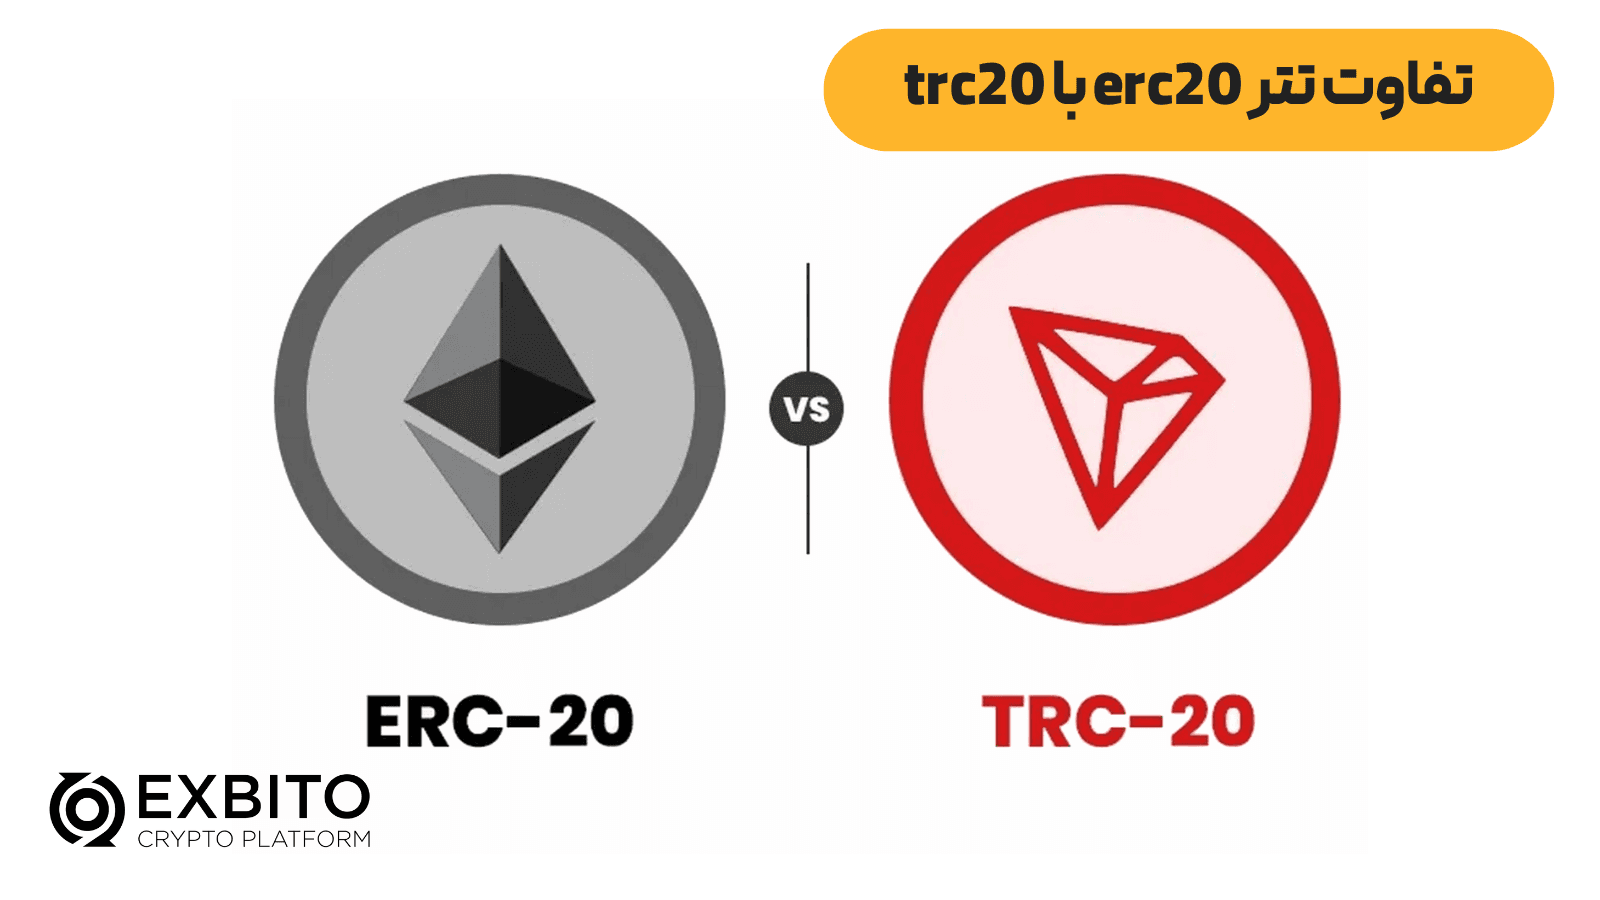 تفاوت تتر erc20 و trc20